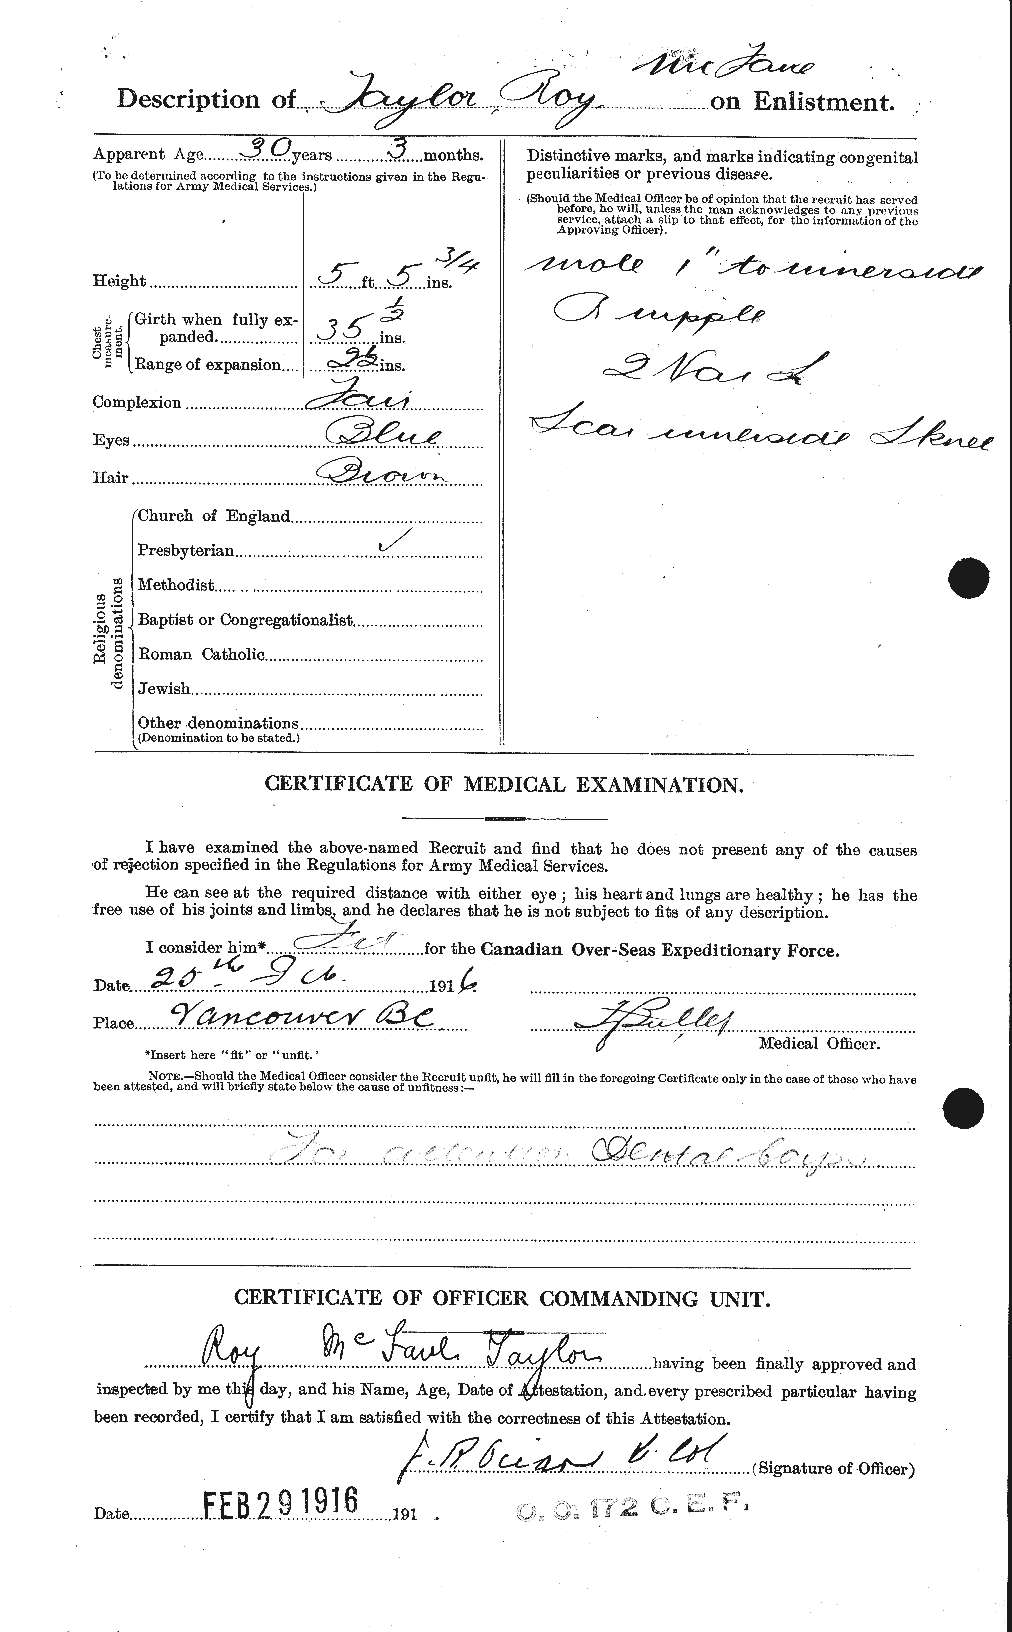 Dossiers du Personnel de la Première Guerre mondiale - CEC 627533b